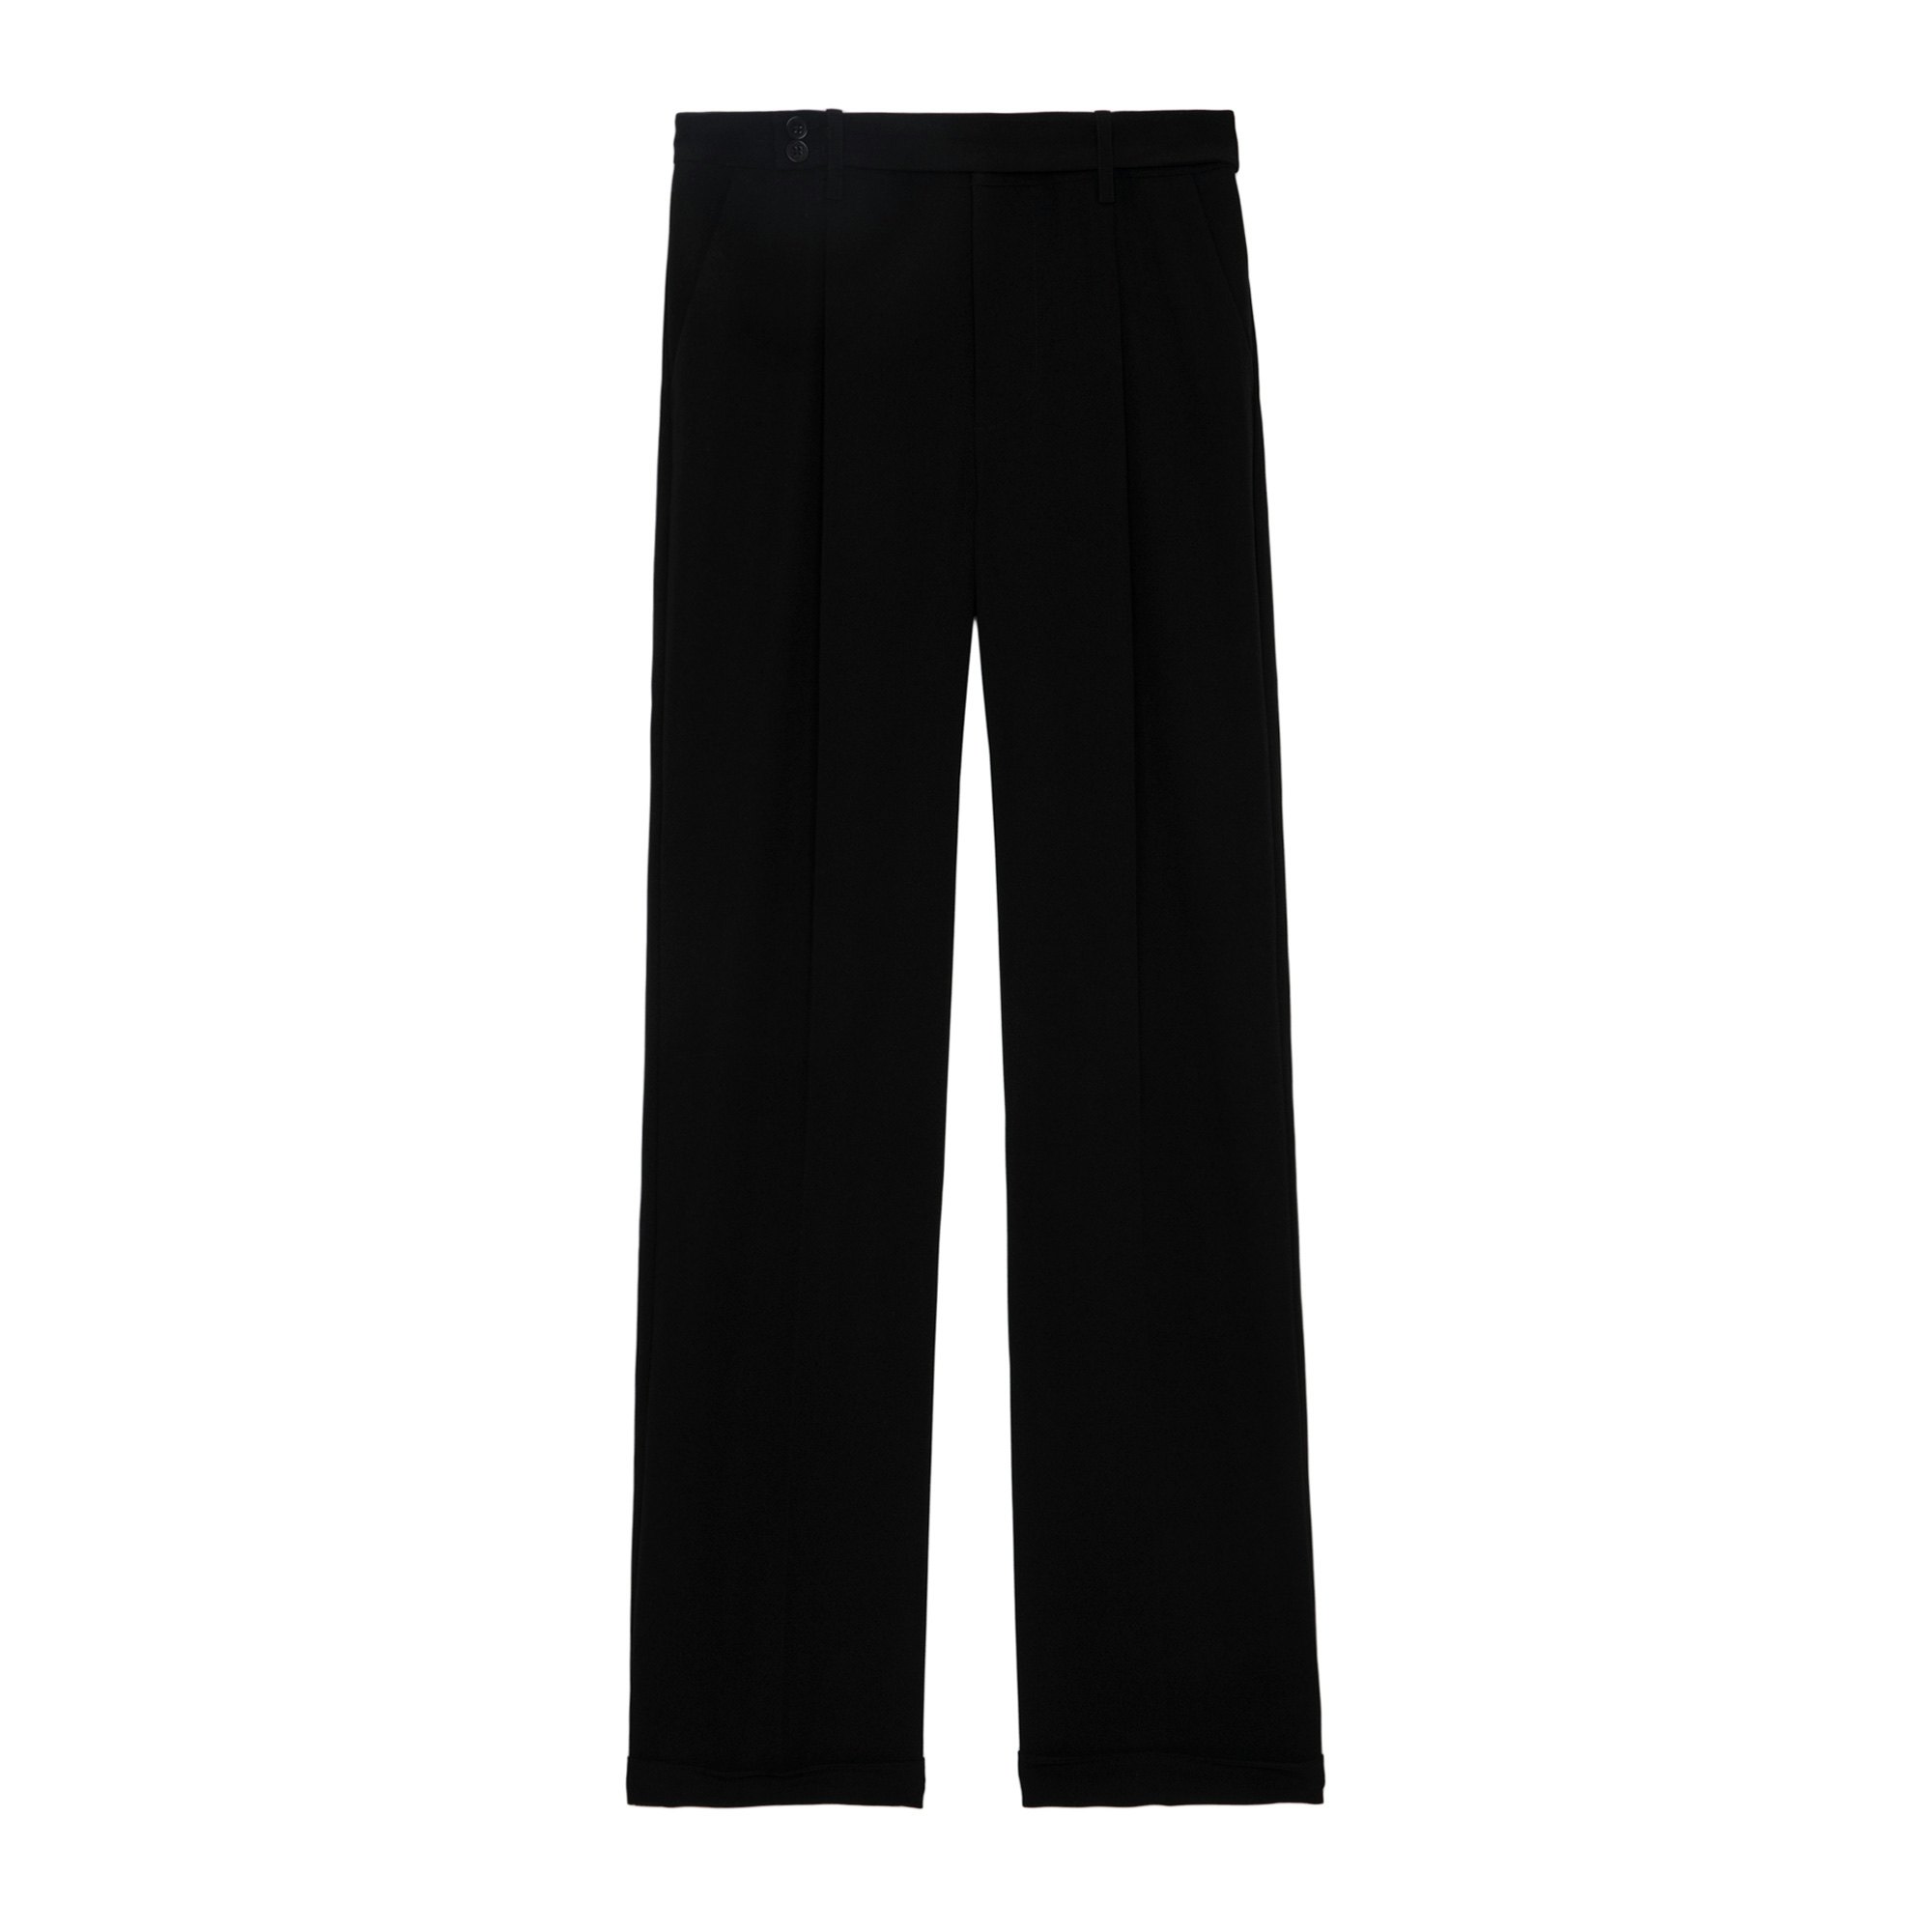 Pantalon Pura Noir - Taille 34 - Femme